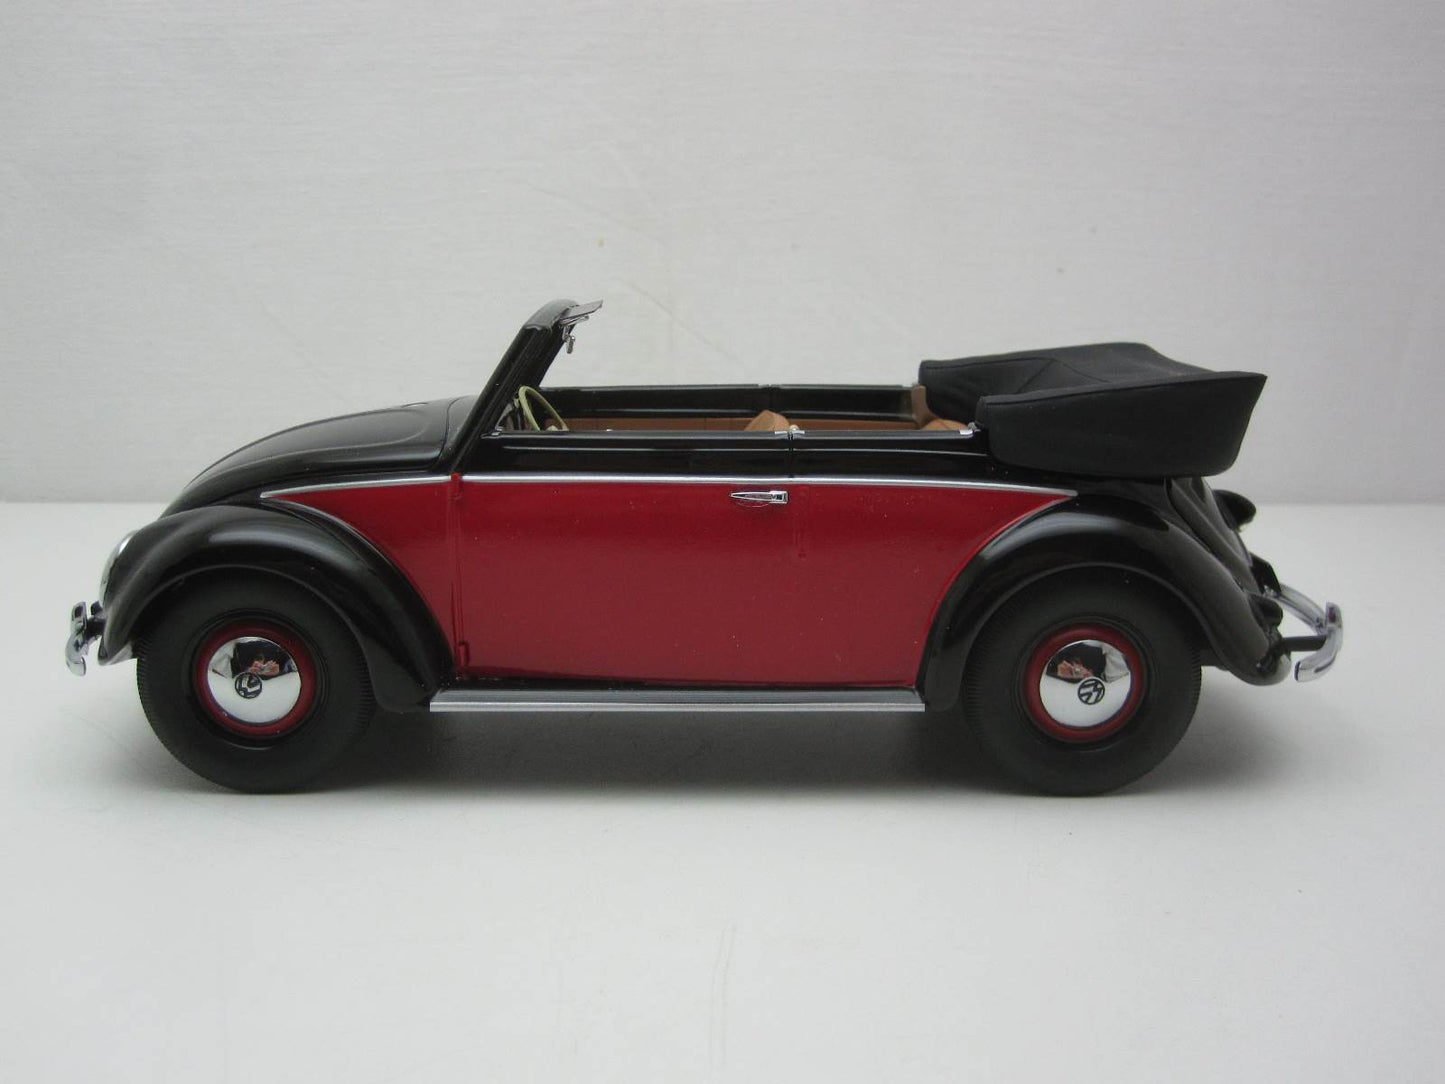 Minichamps 1:18 Volkswagen Beetle 1200 Cabriolet 1949 Black/Red 107054132